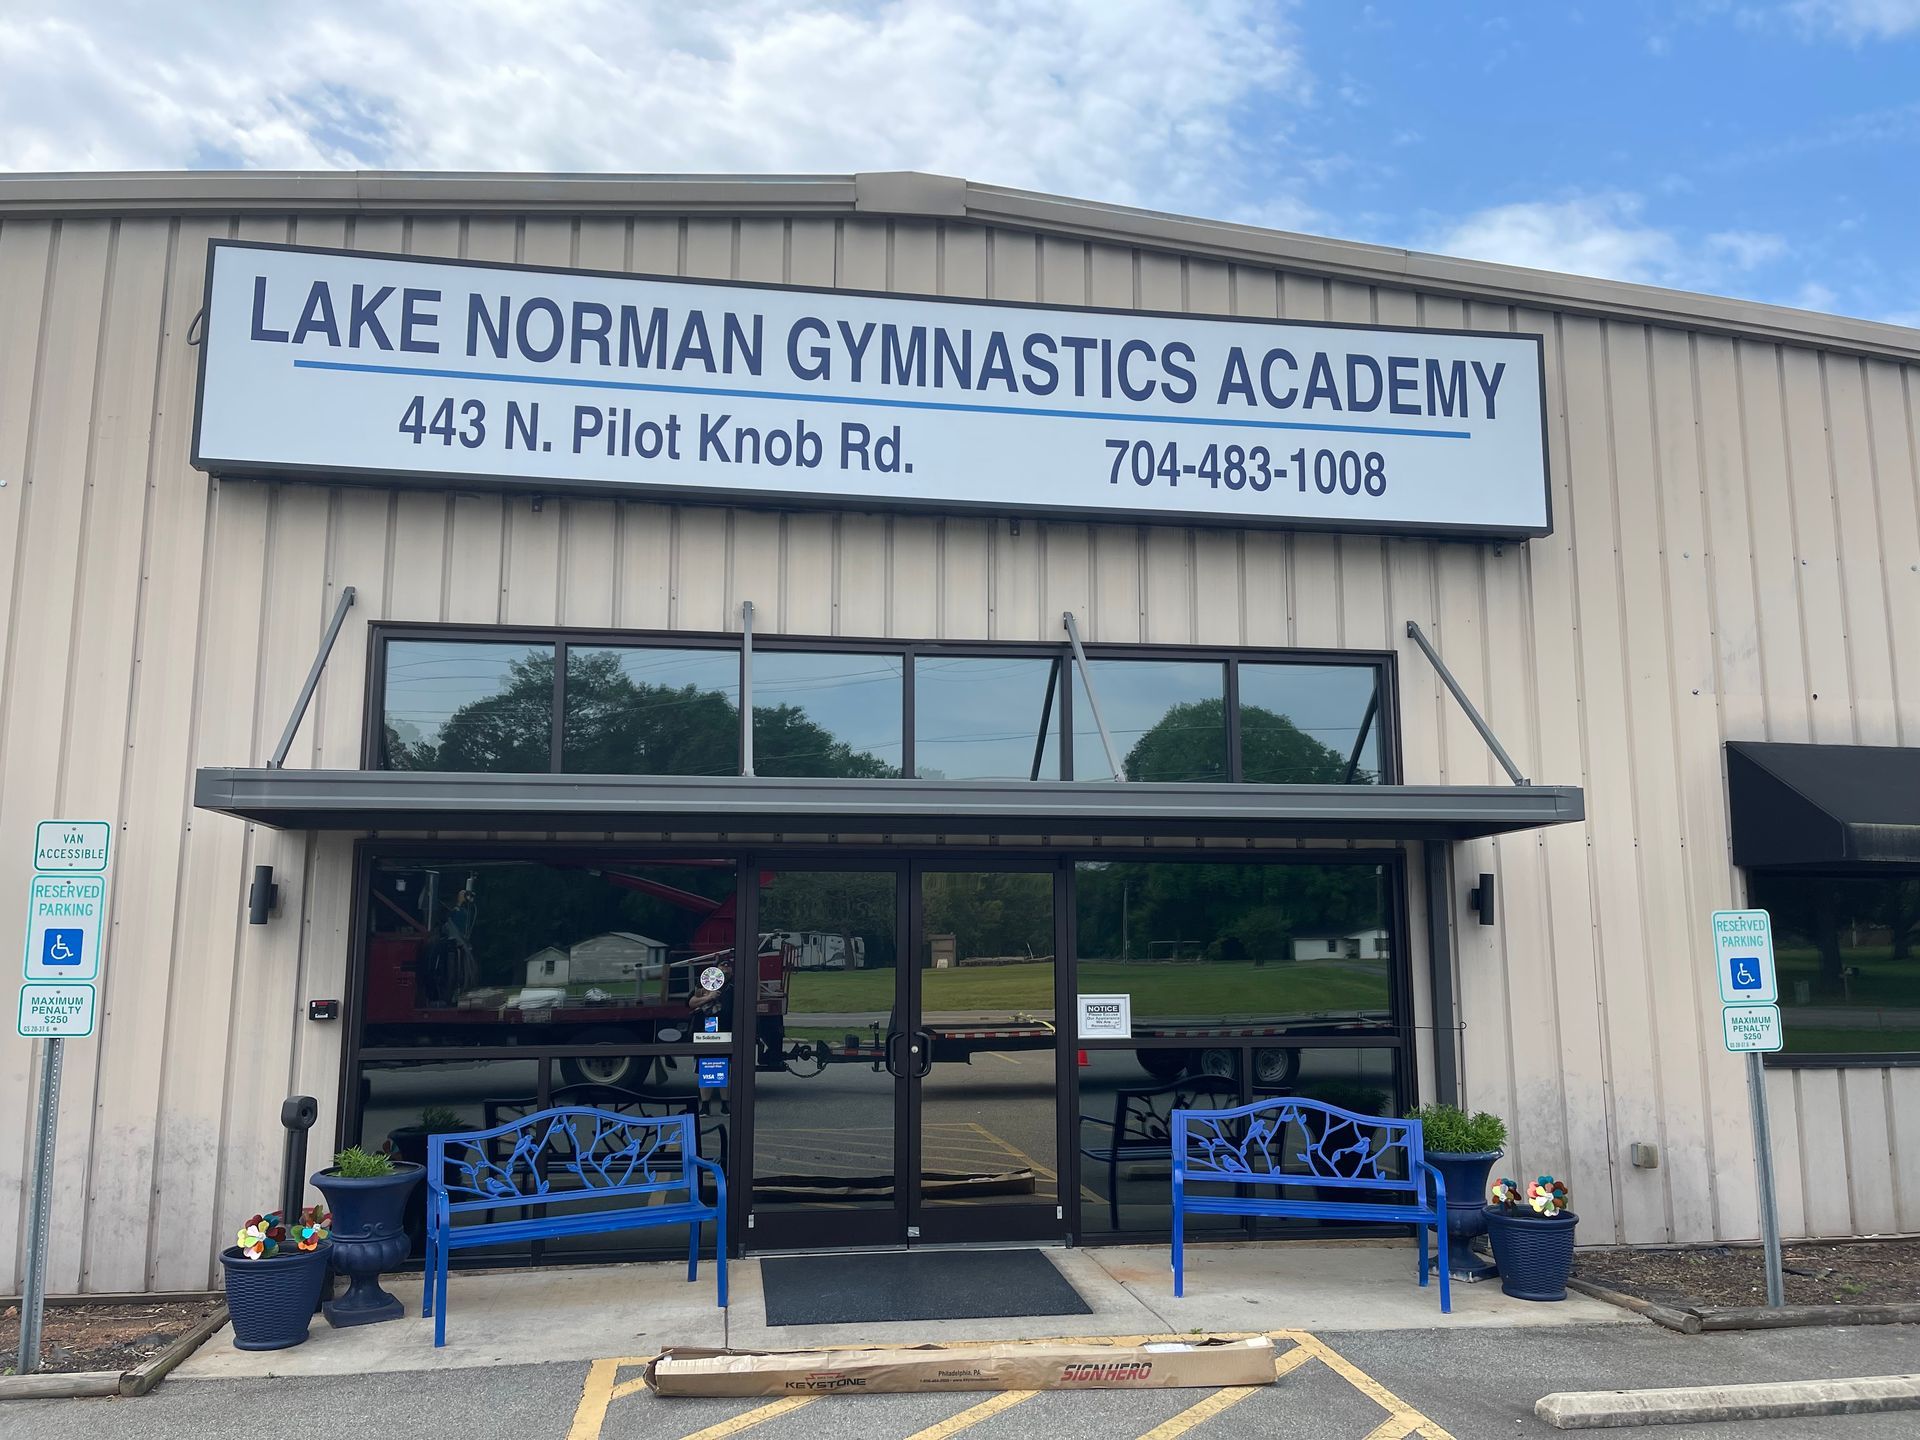 Lake Norman Gymnastics Academy building